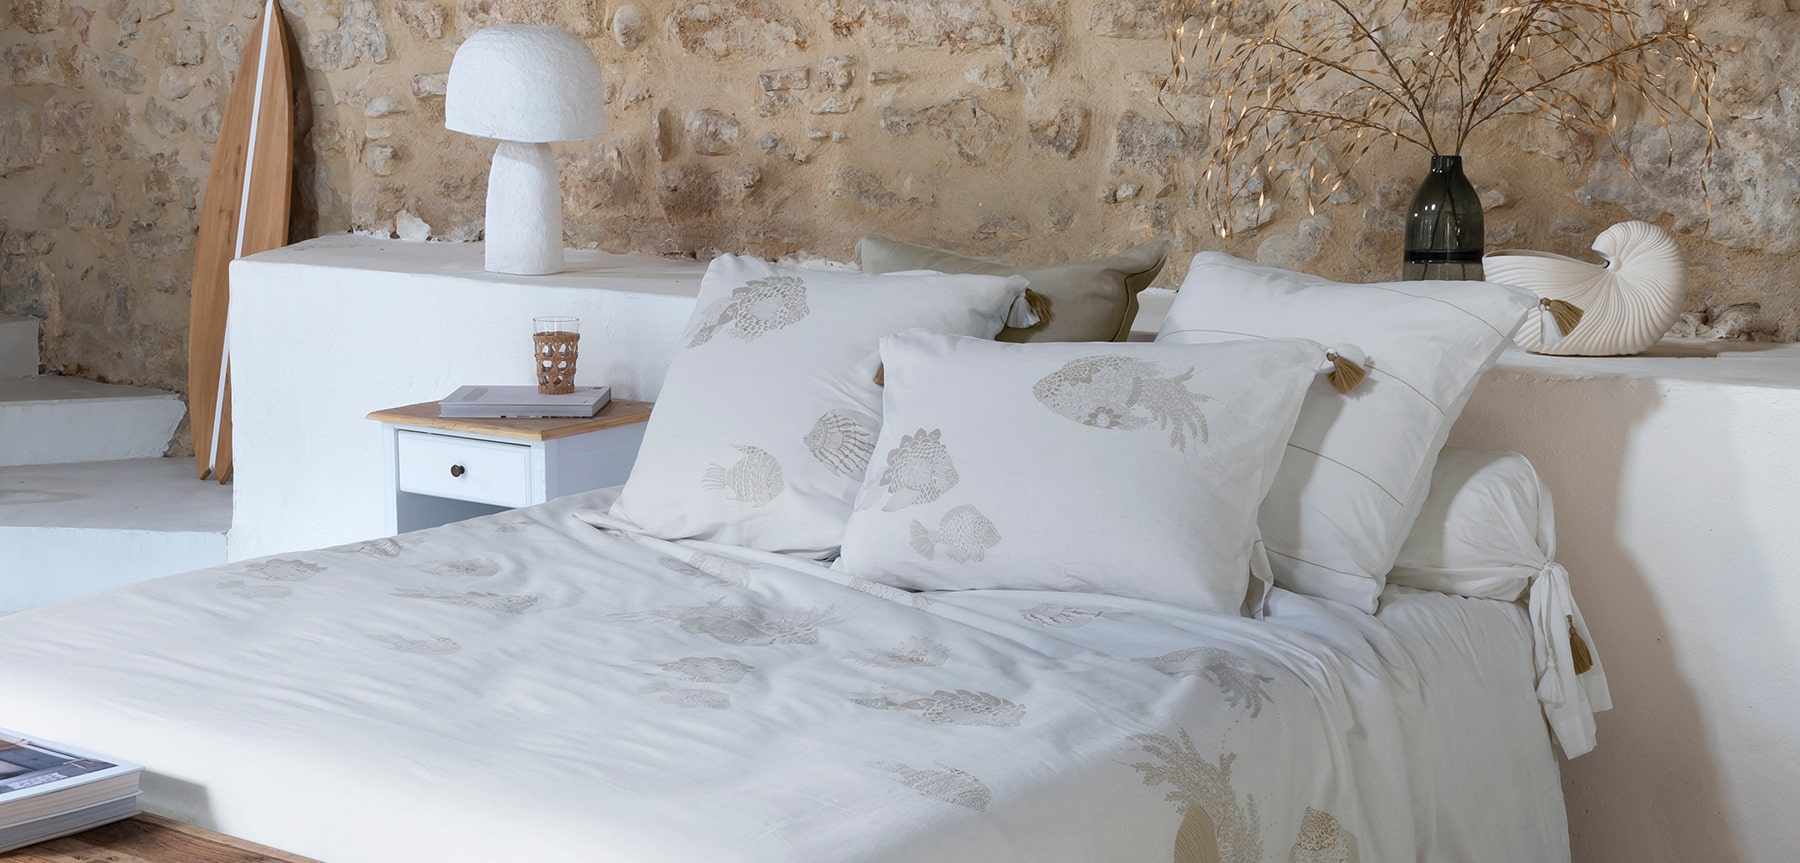 Bed linen set Amorgos